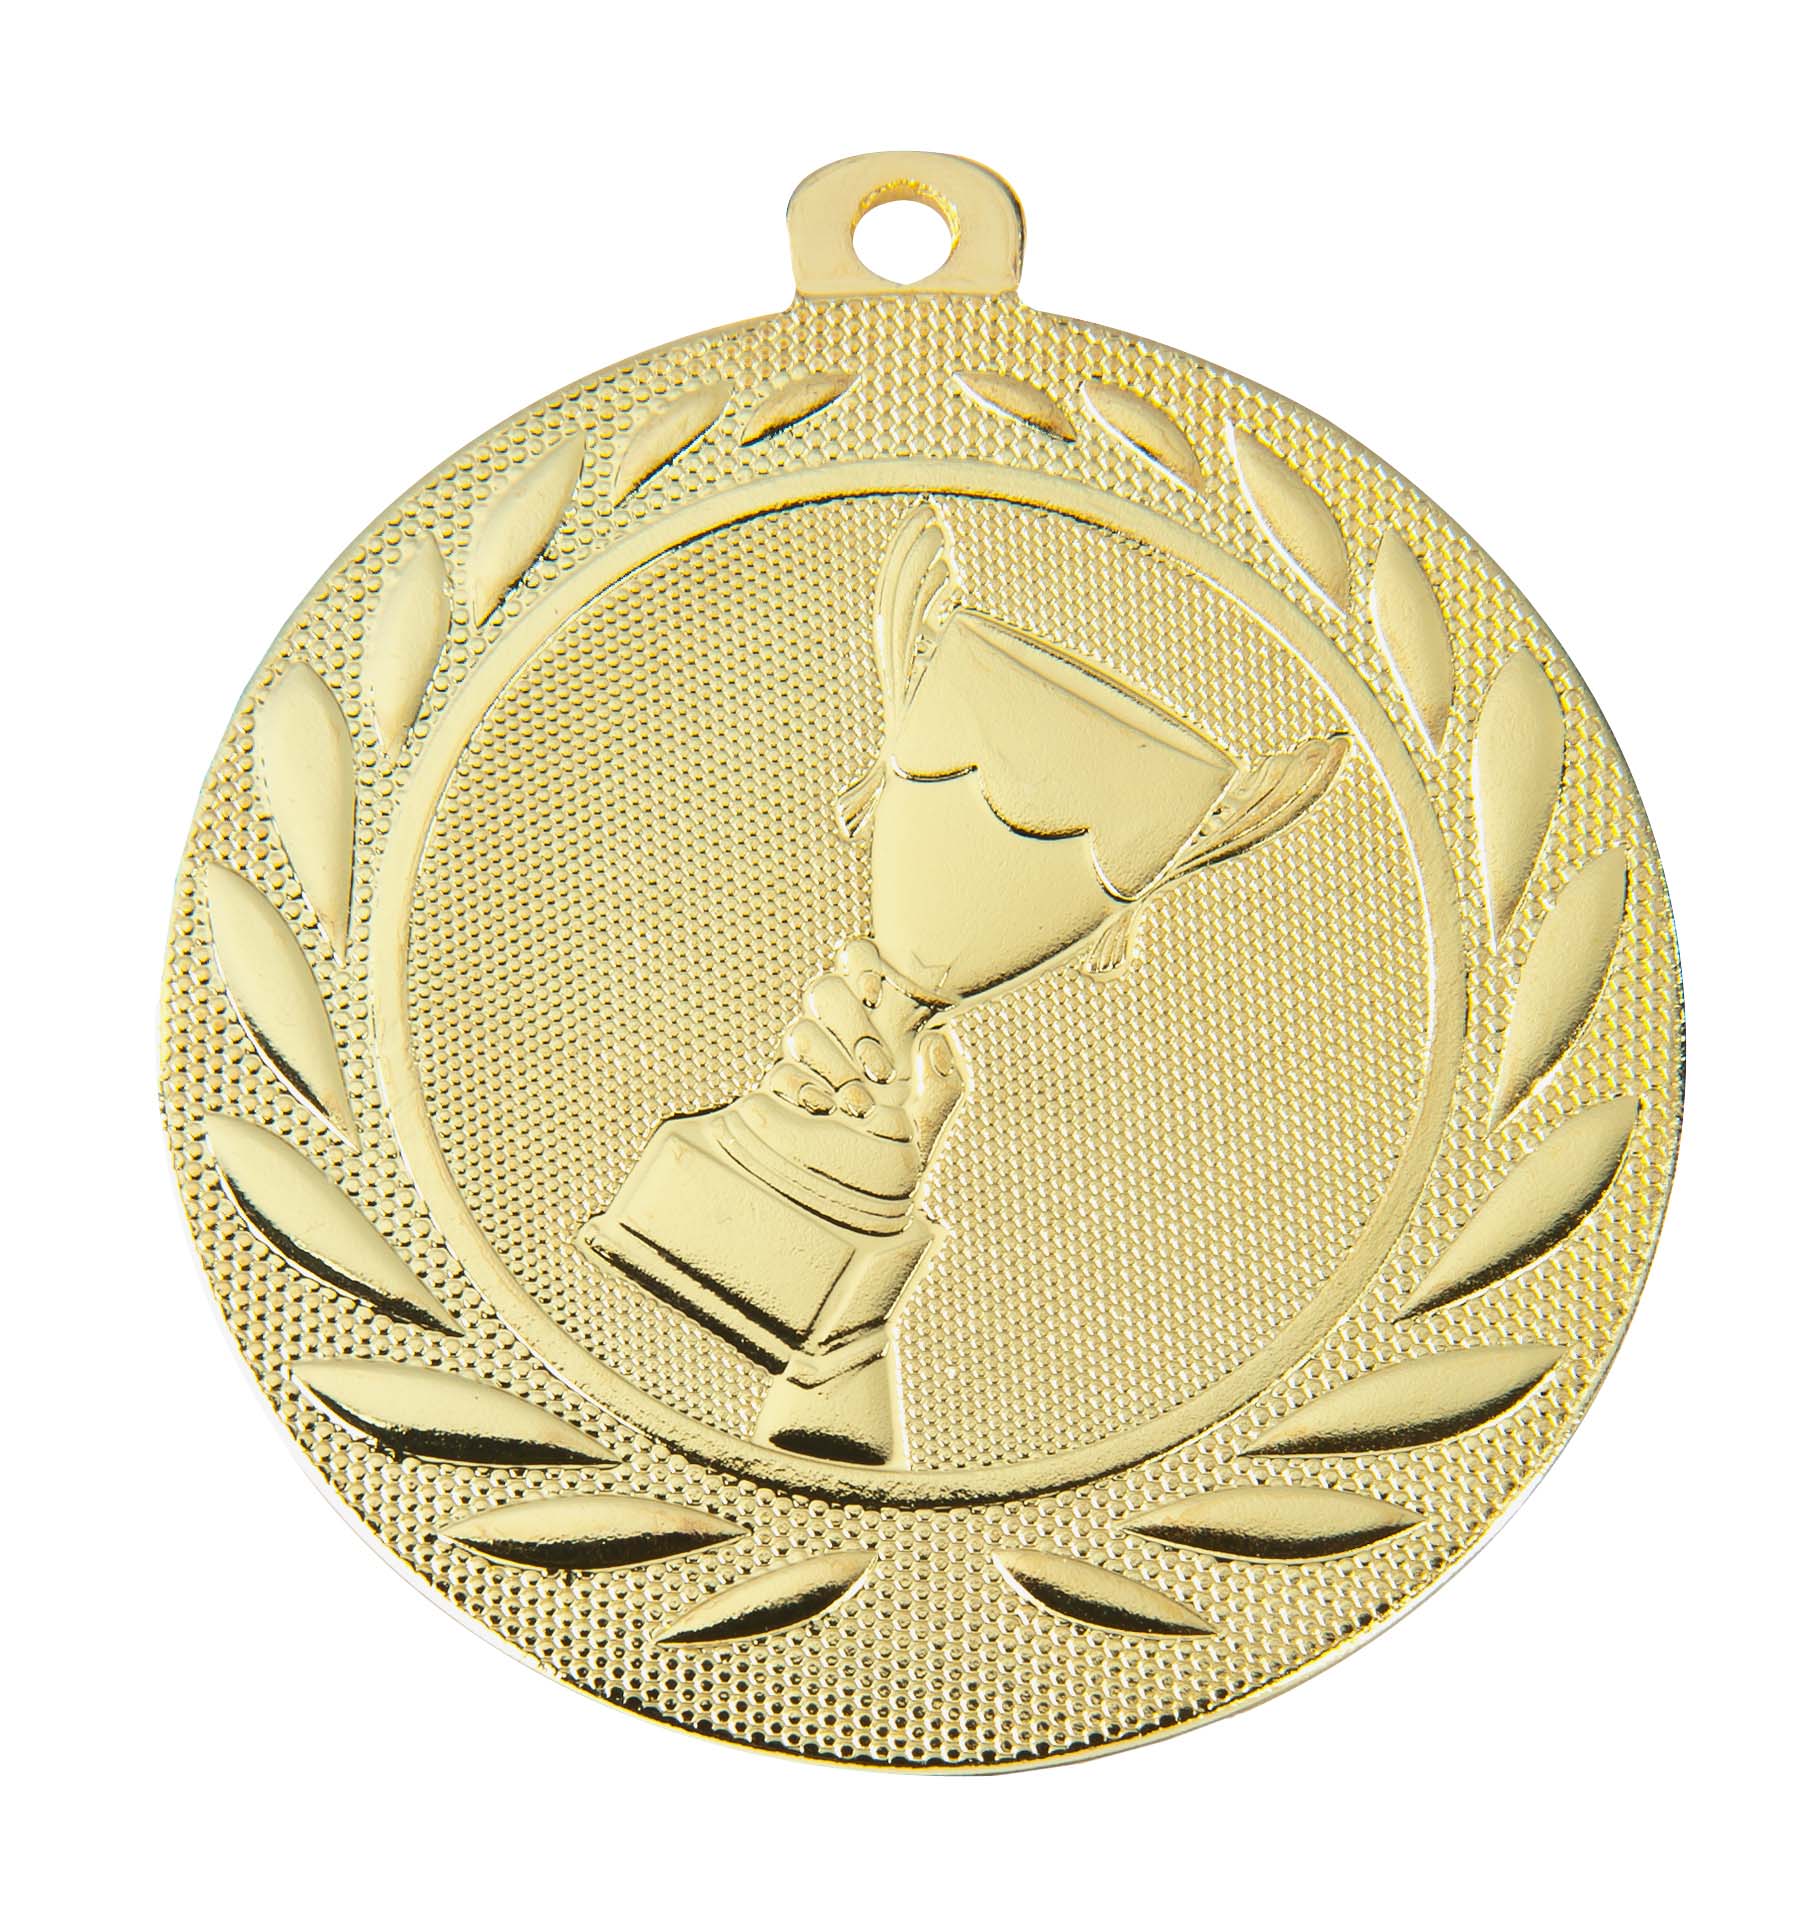 Medaille DI5000A inkl. Band und Beschriftung Gold Fertig montiert gegen Aufpreis